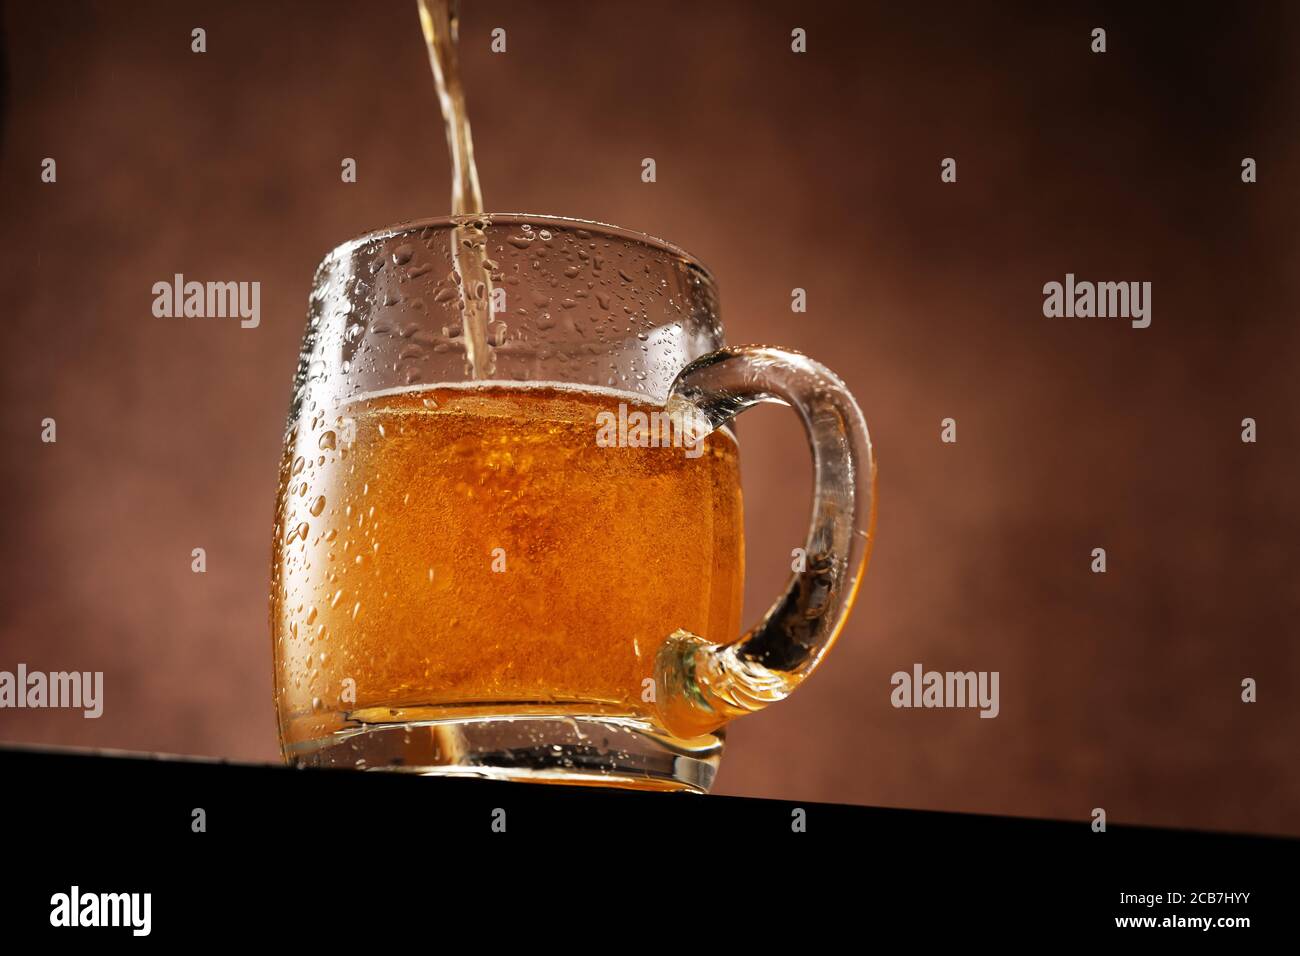 La bière légère est versée dans une tasse debout contre le brun arrière-plan en dessous de la ligne oculaire Banque D'Images